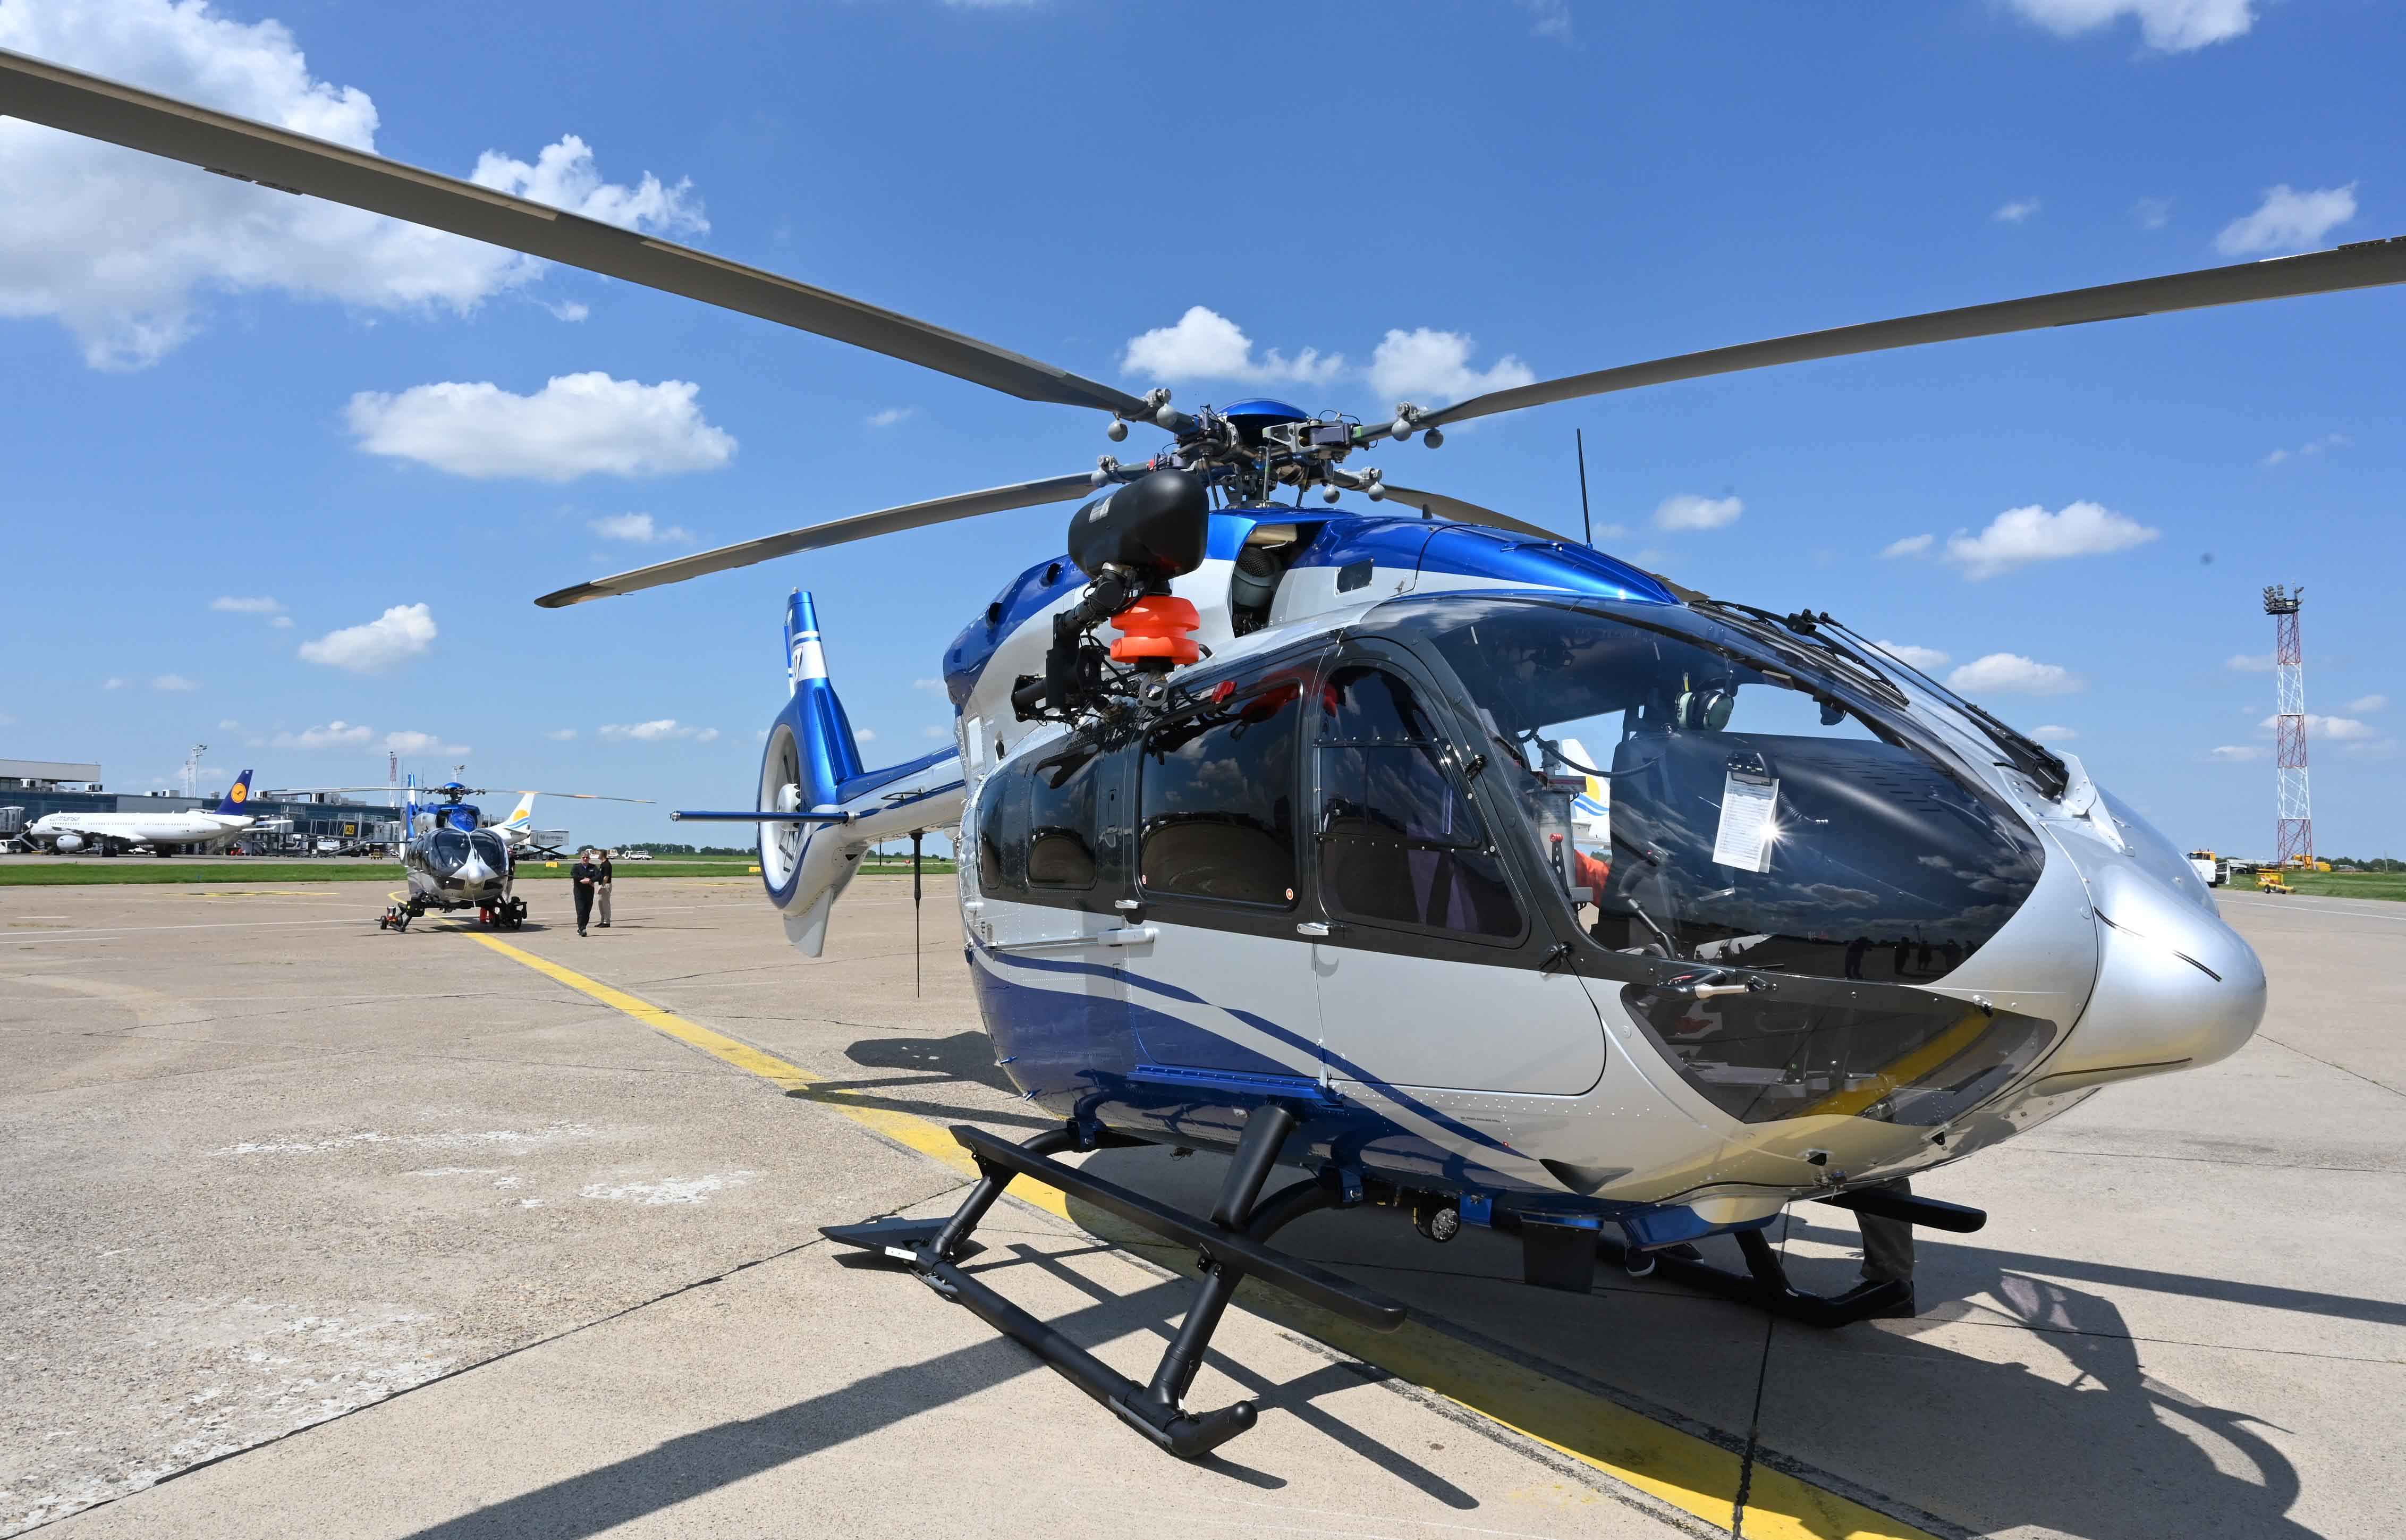 Helikopterska jedinica MUP-a dobila dva nova helikoptera H-145M, čime je počela obnova flote koja nije zanavlјana skoro 40 godina